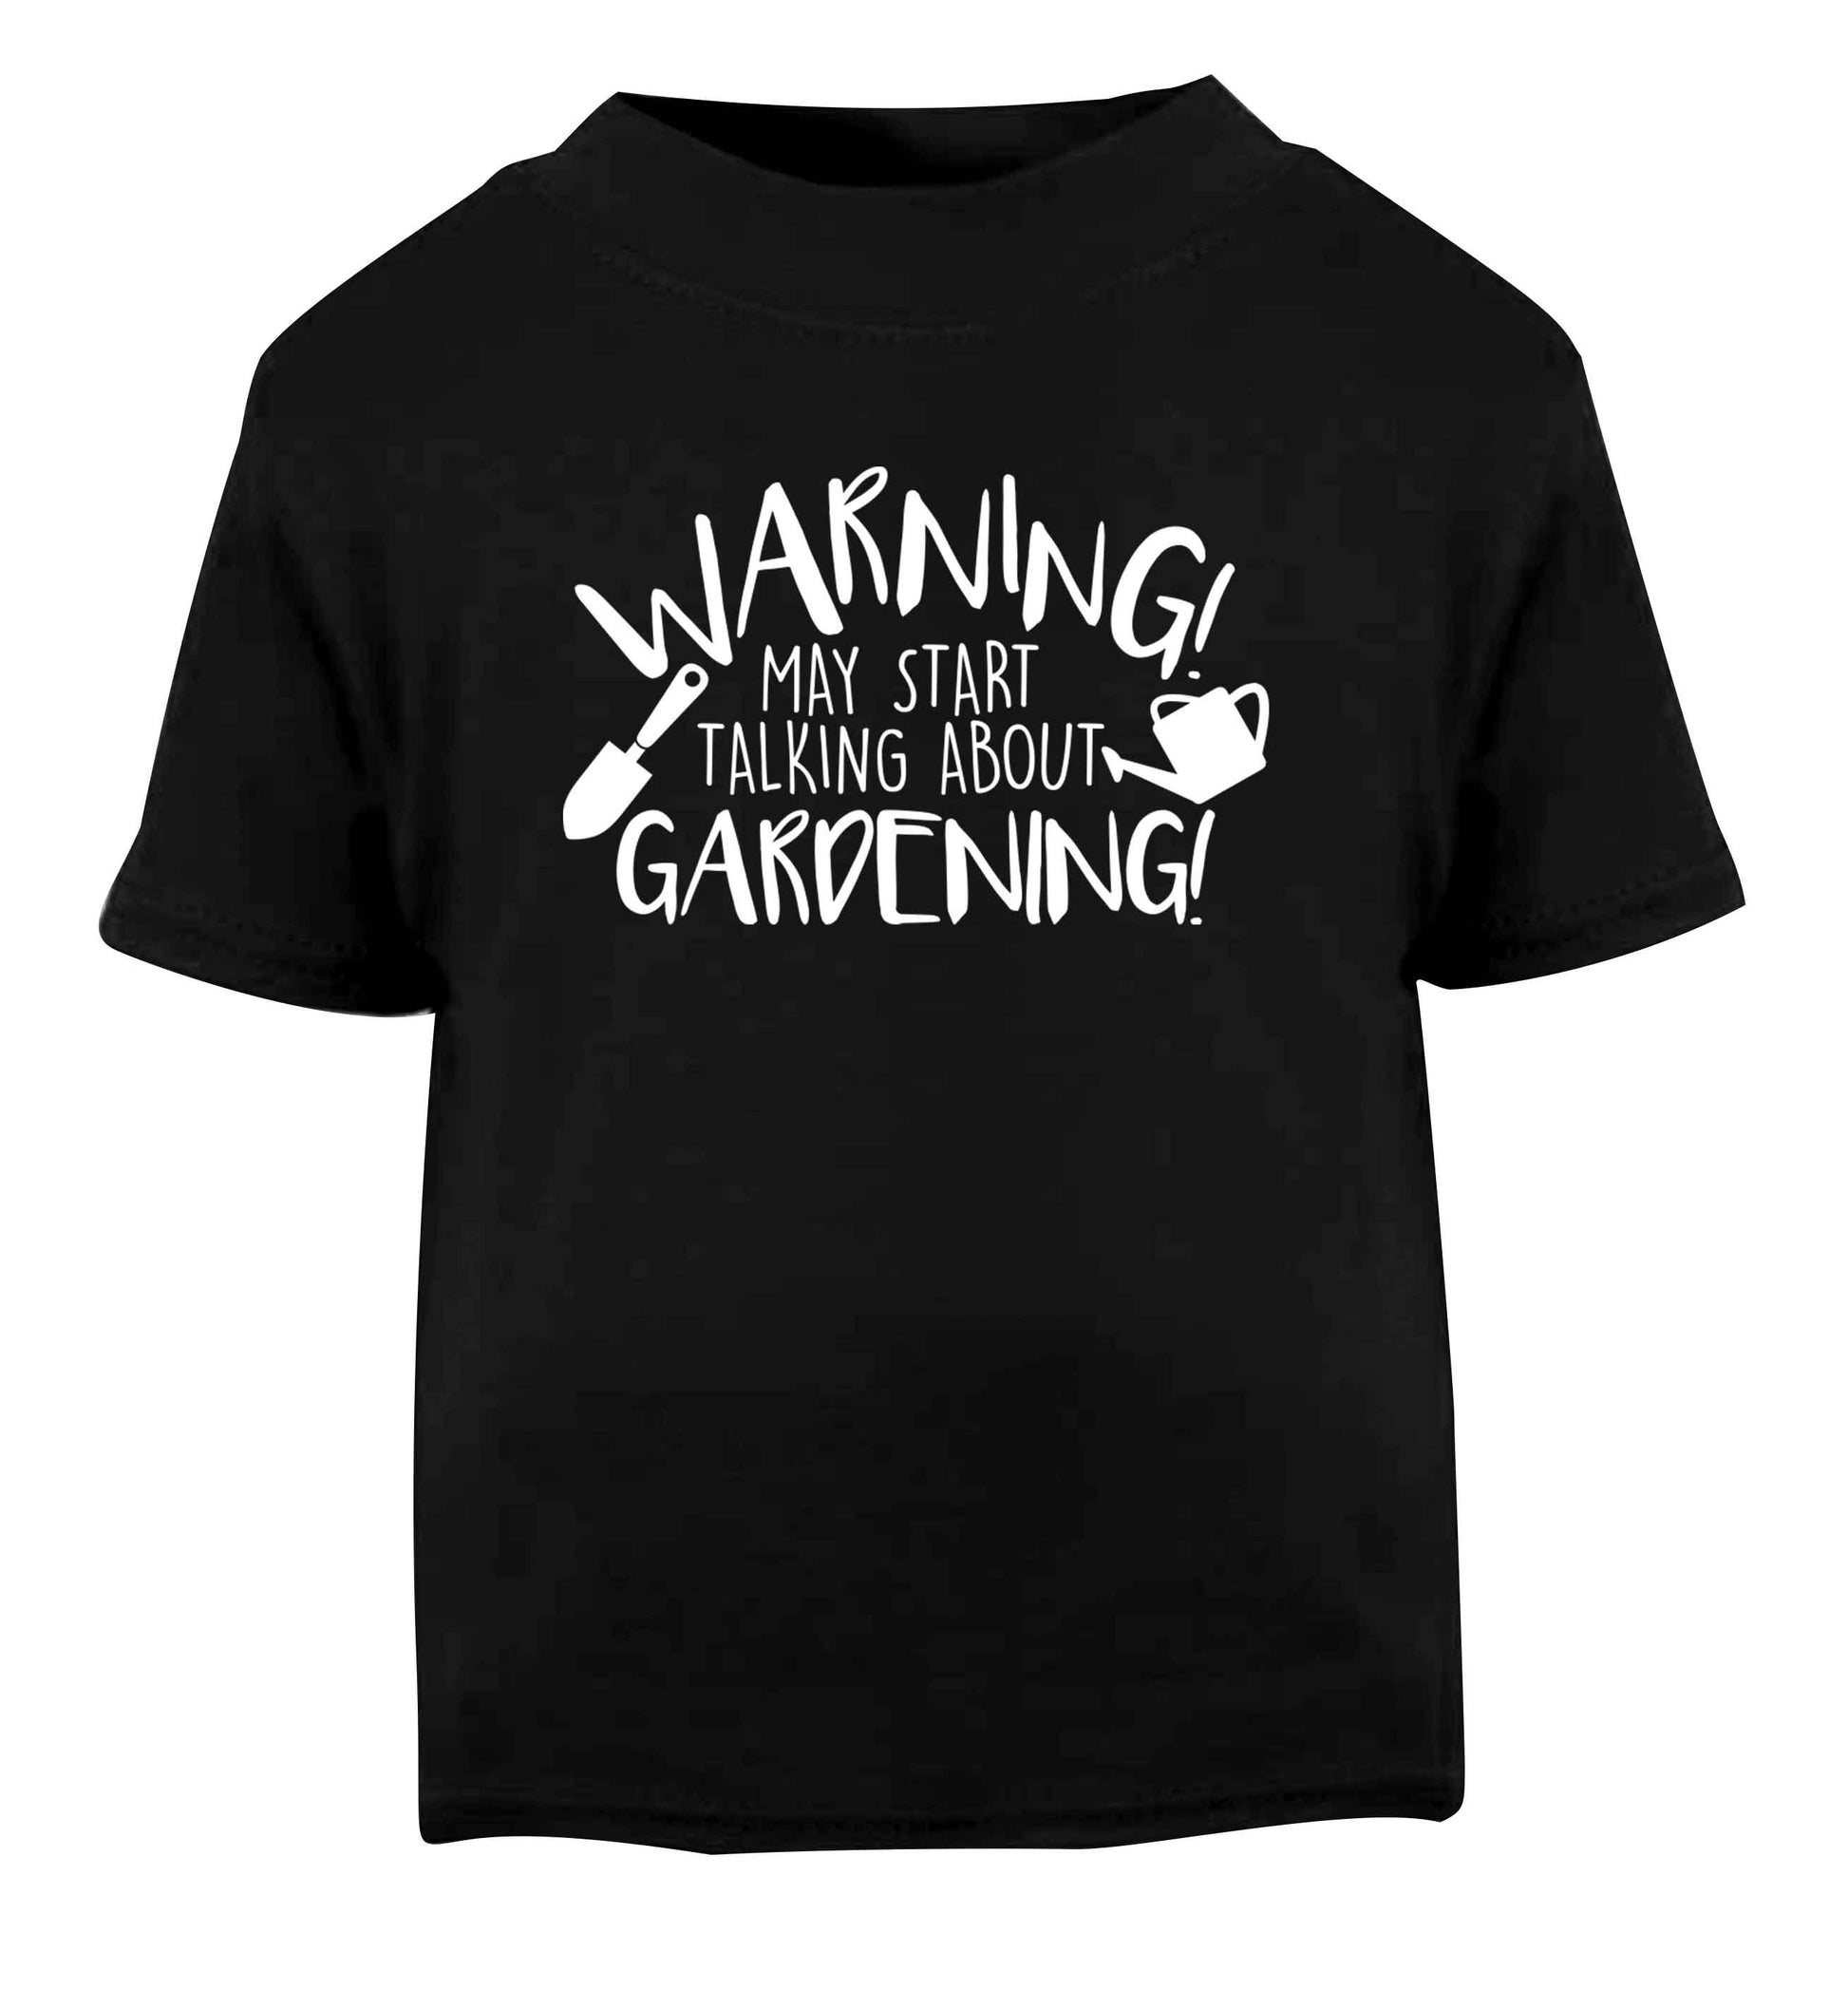 Warning may start talking about gardening Black Baby Toddler Tshirt 2 years